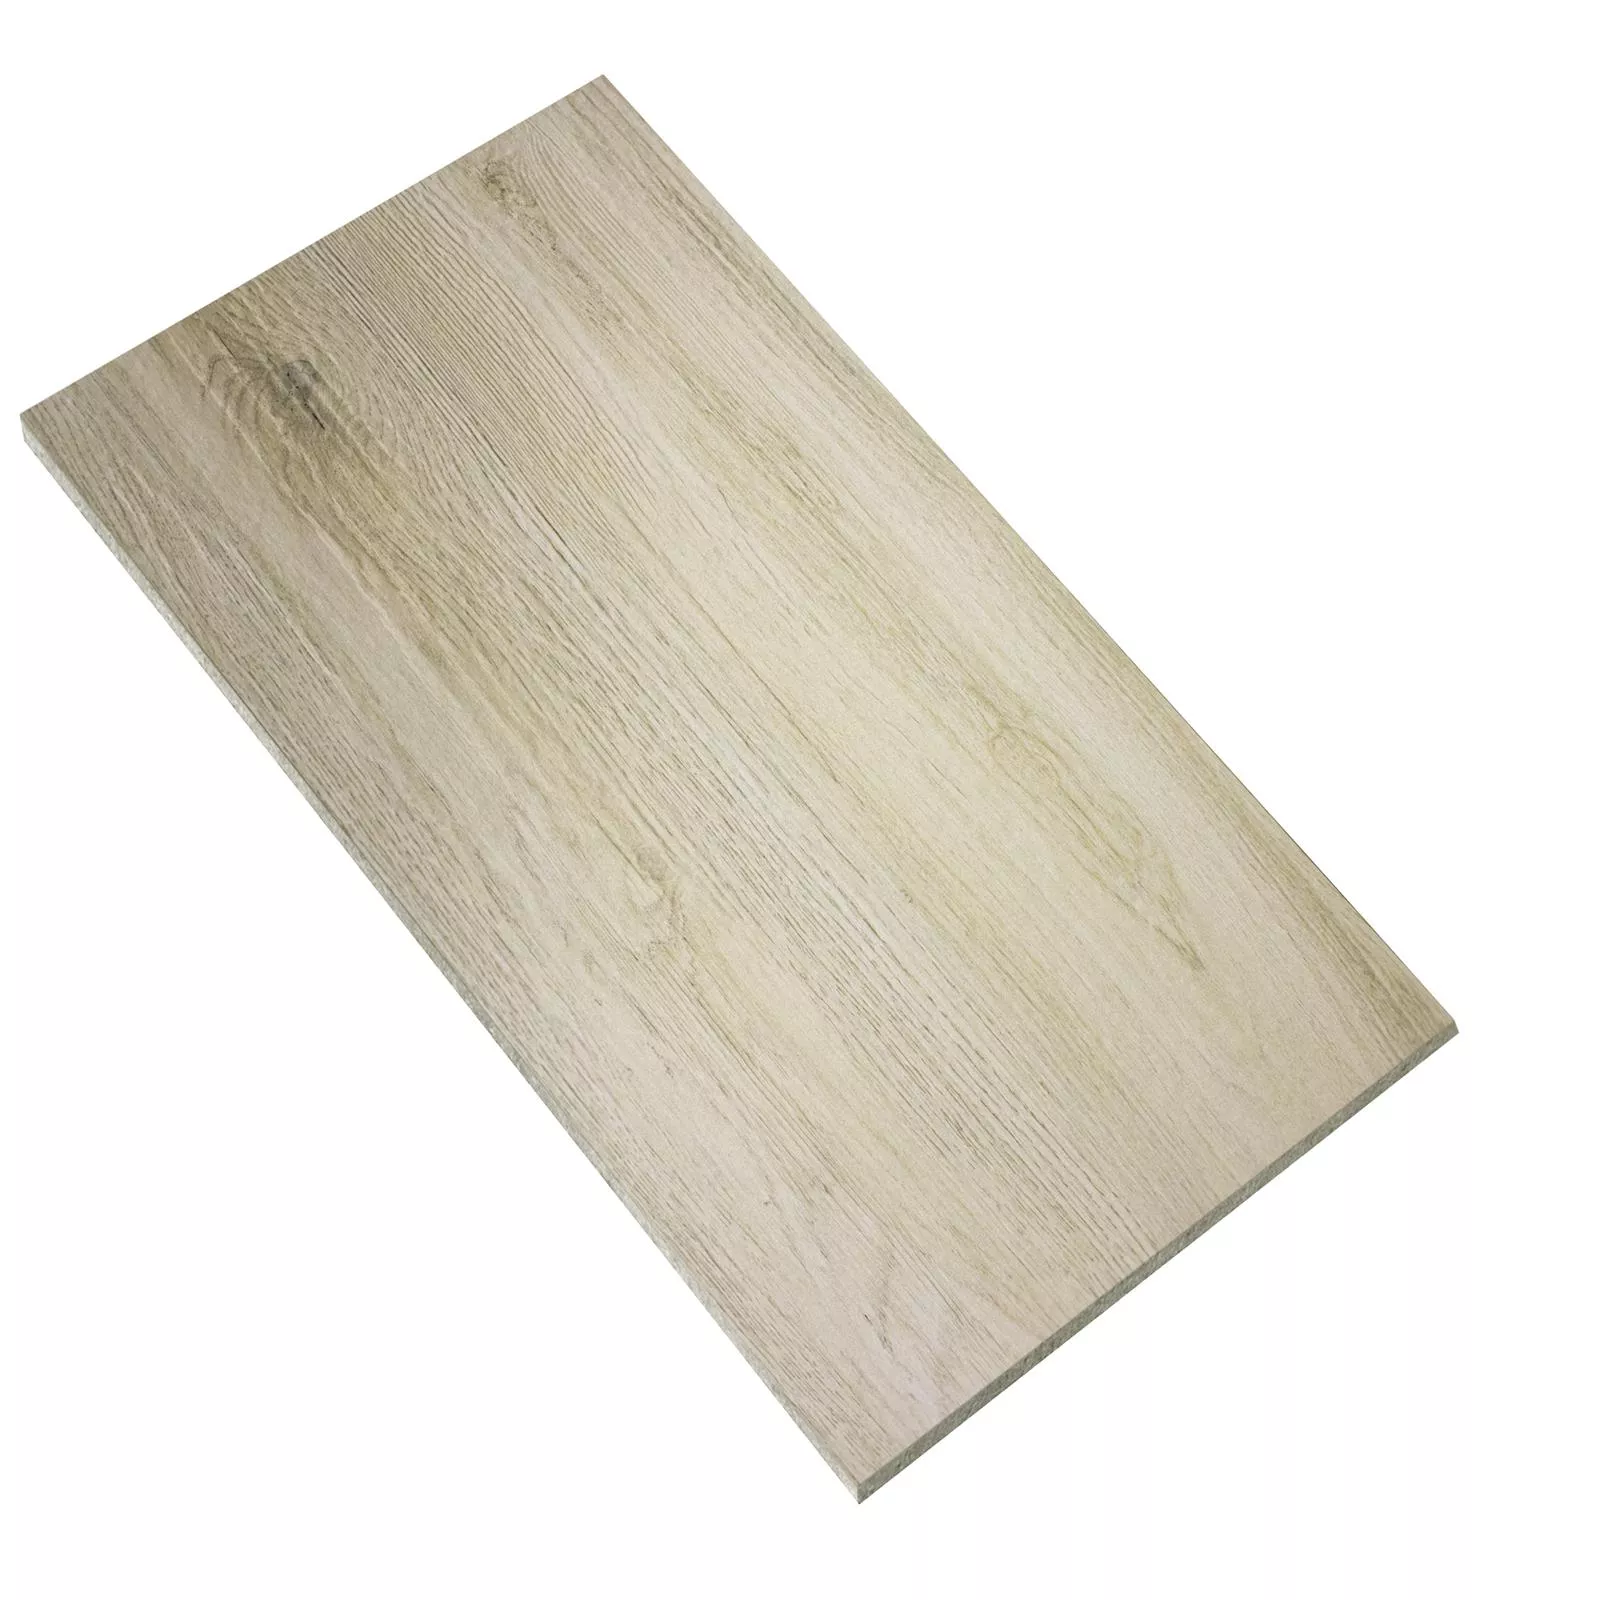 Próbka Płytki Podłogowe Wygląd Drewna Alexandria Beżowy 30x60cm